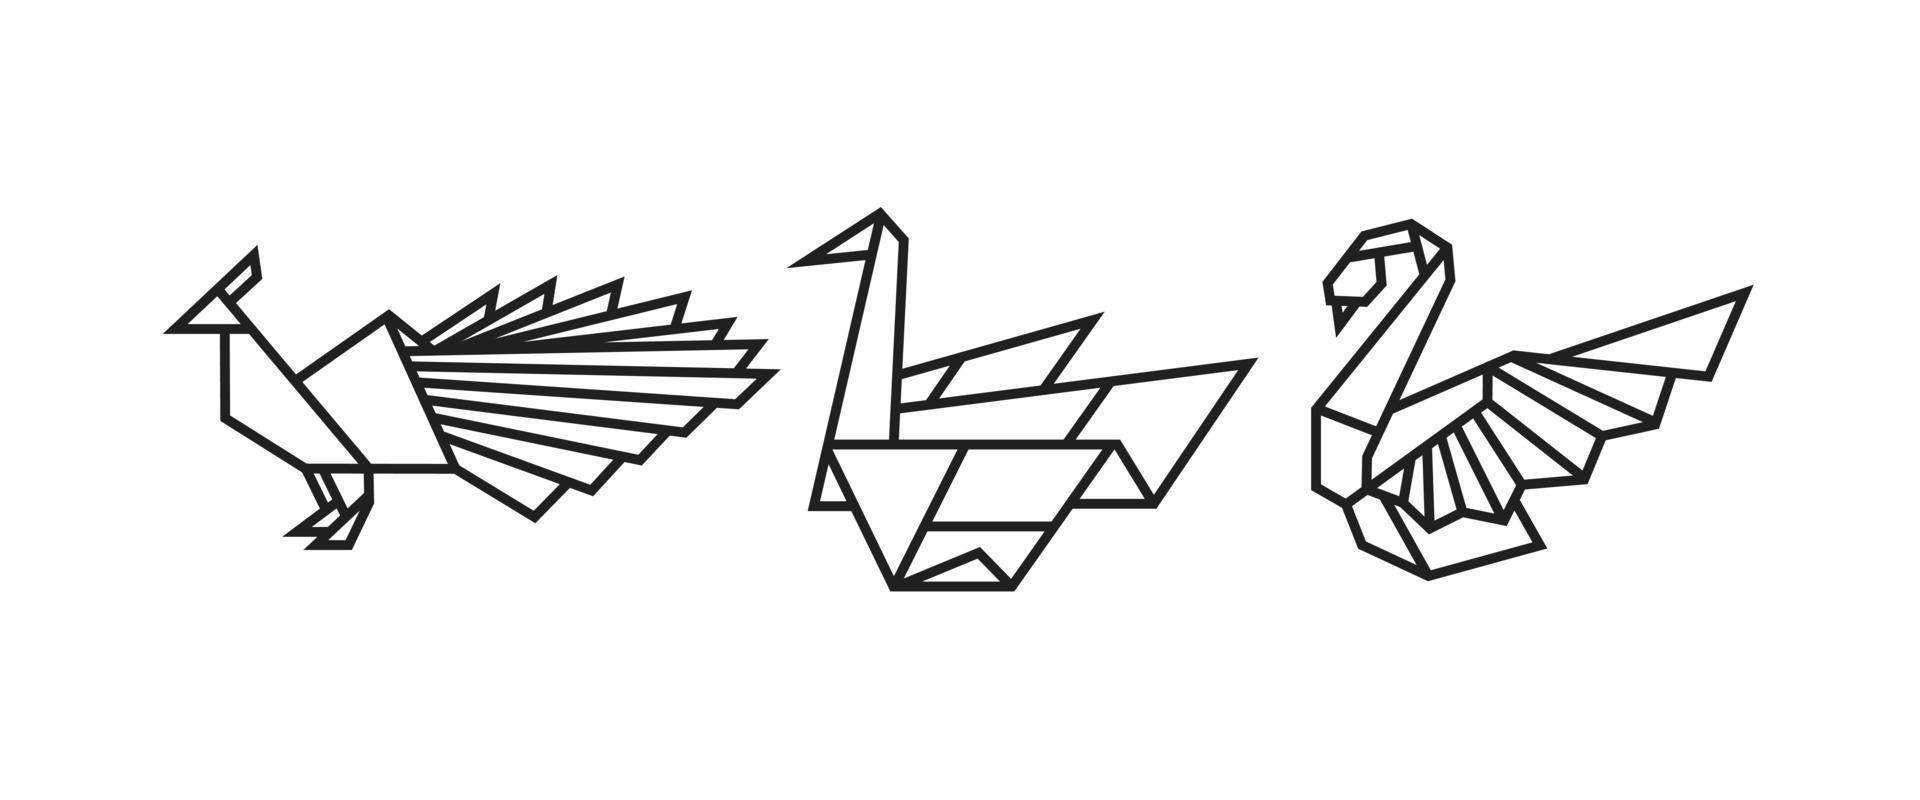 ilustrações de pássaros em estilo origami vetor